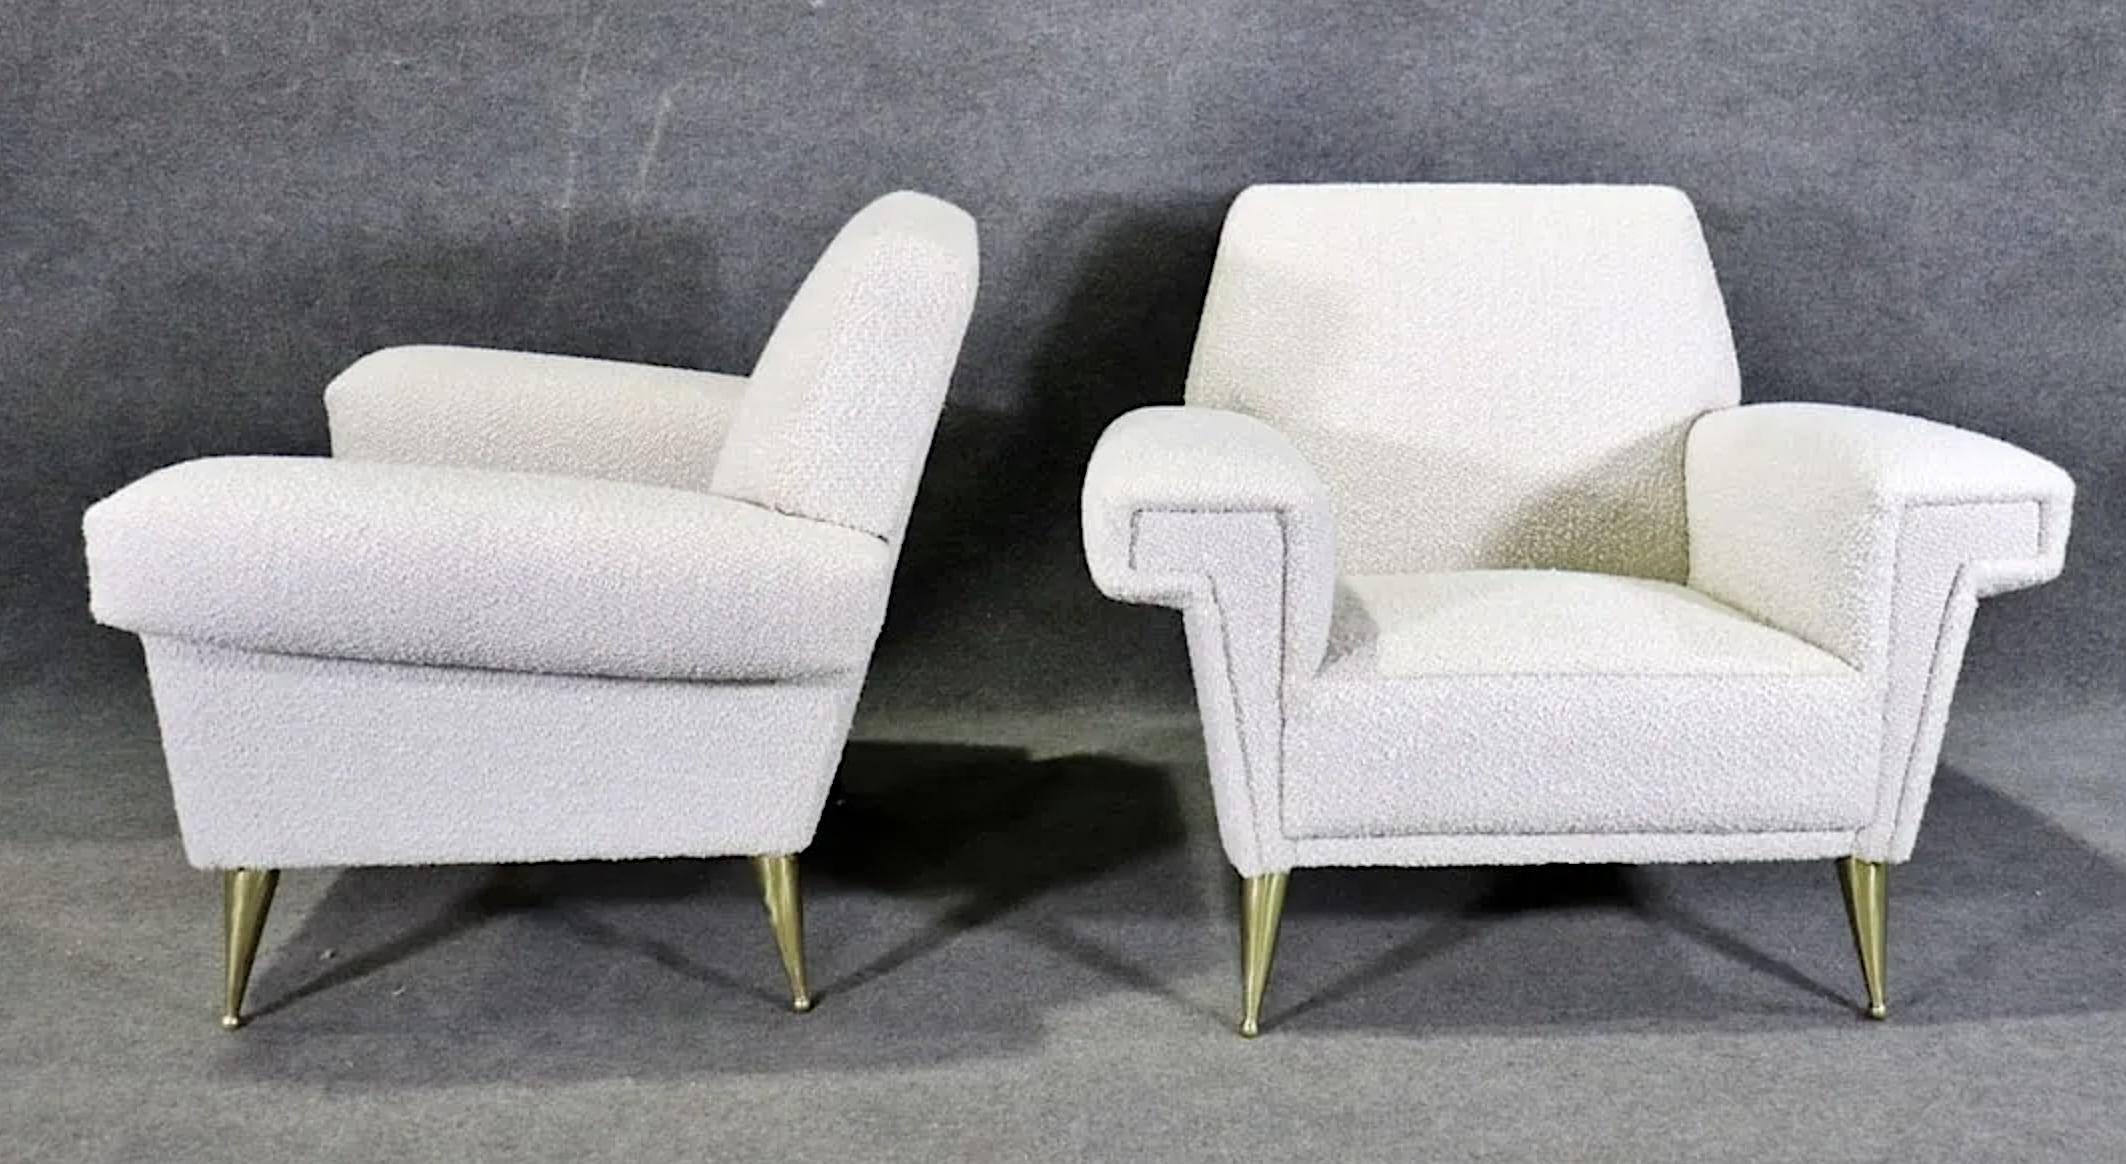 Paire d'excellents fauteuils avec pieds en laiton poli. Un design moderne du milieu du siècle qui offre confort et style.
Veuillez confirmer le lieu NY ou NJ